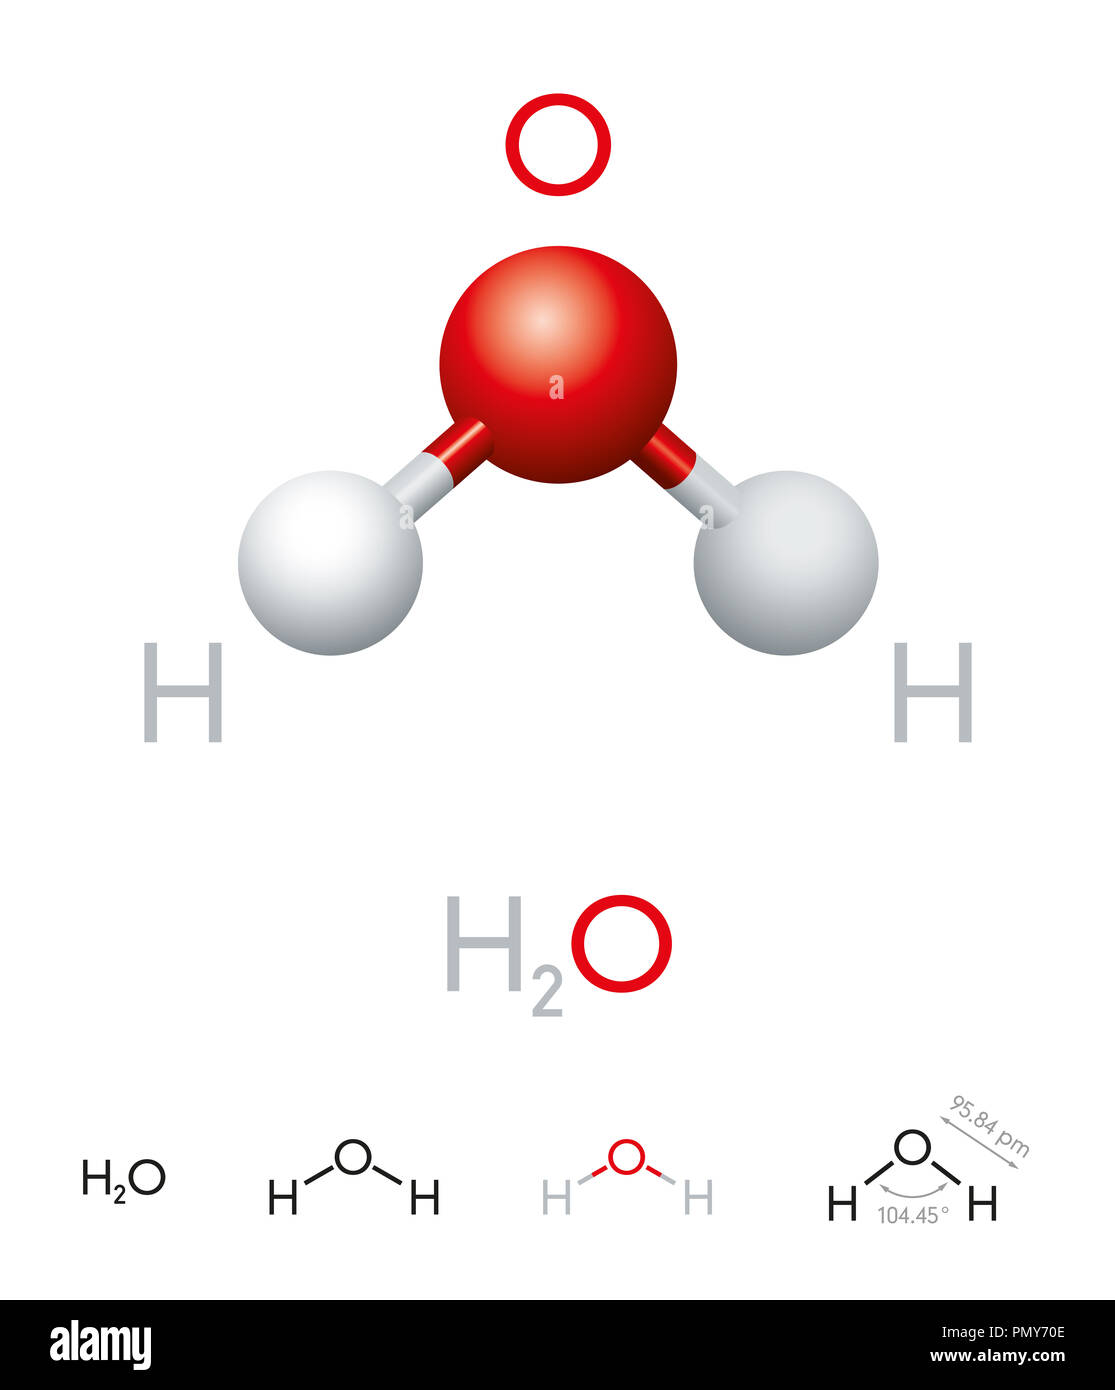 H2O. Molécula de agua modelo, fórmula química, bola-y-stick modelo, estructura geométrica y la fórmula estructural. Polar compuestos inorgánicos. Foto de stock